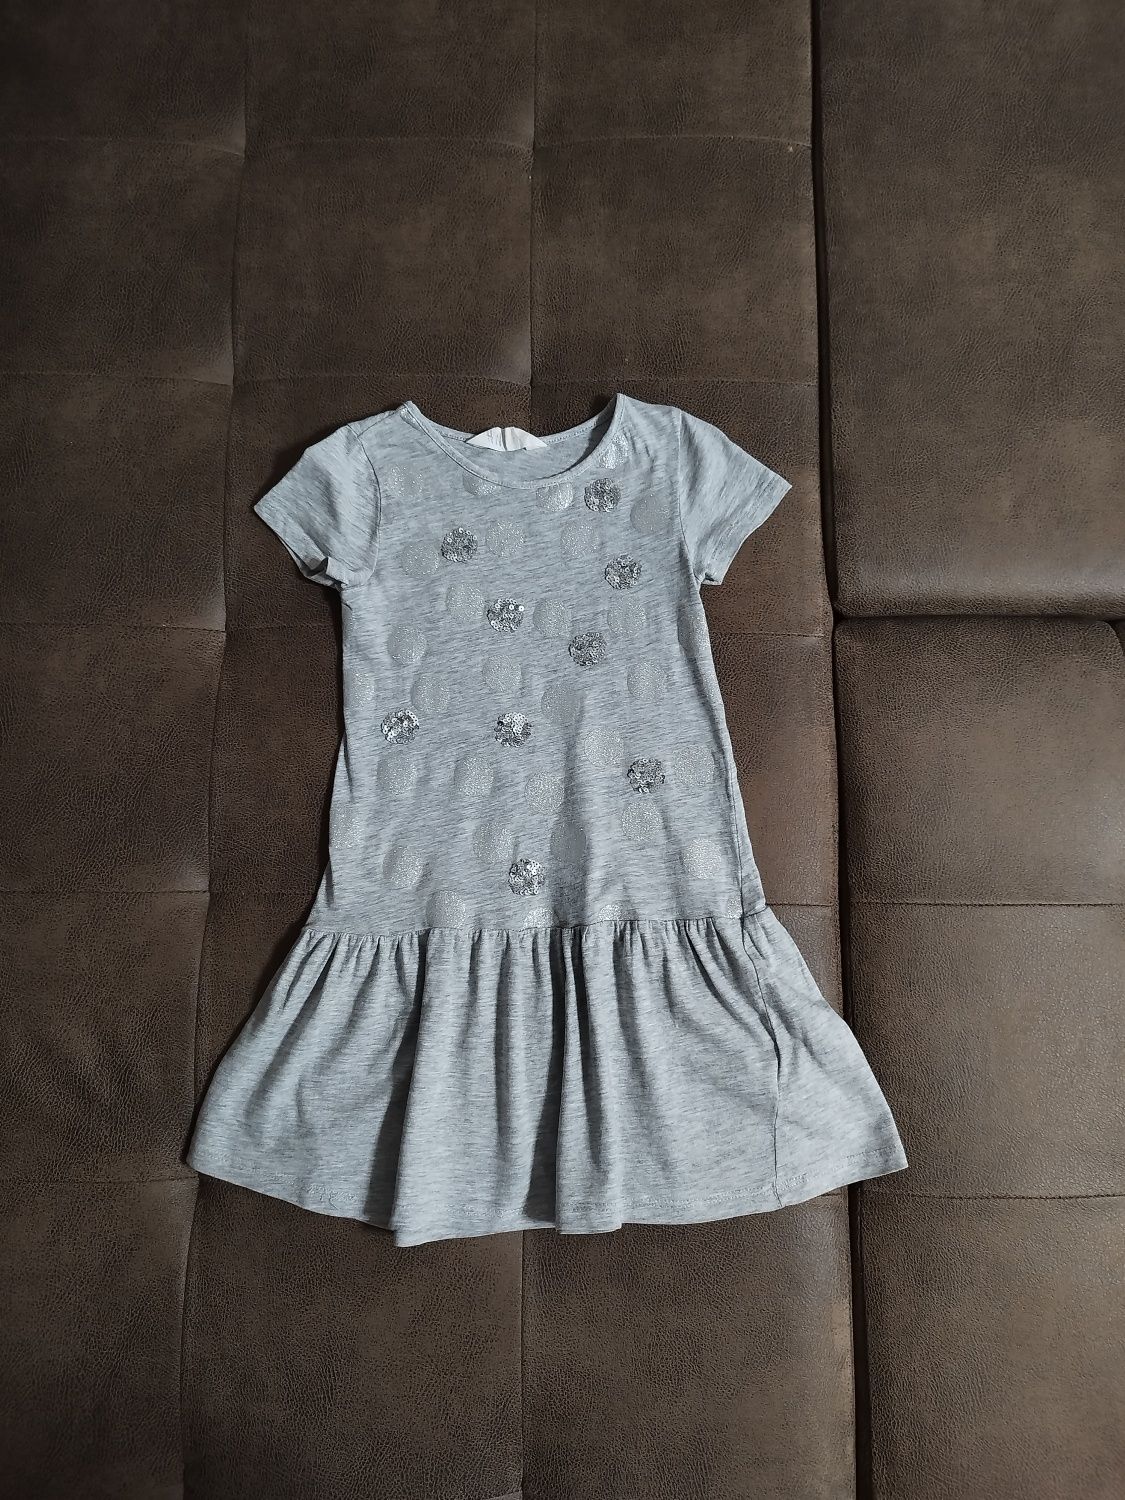 Платье H&M hm для девочки 4-6 лет, рост 110-116 см.